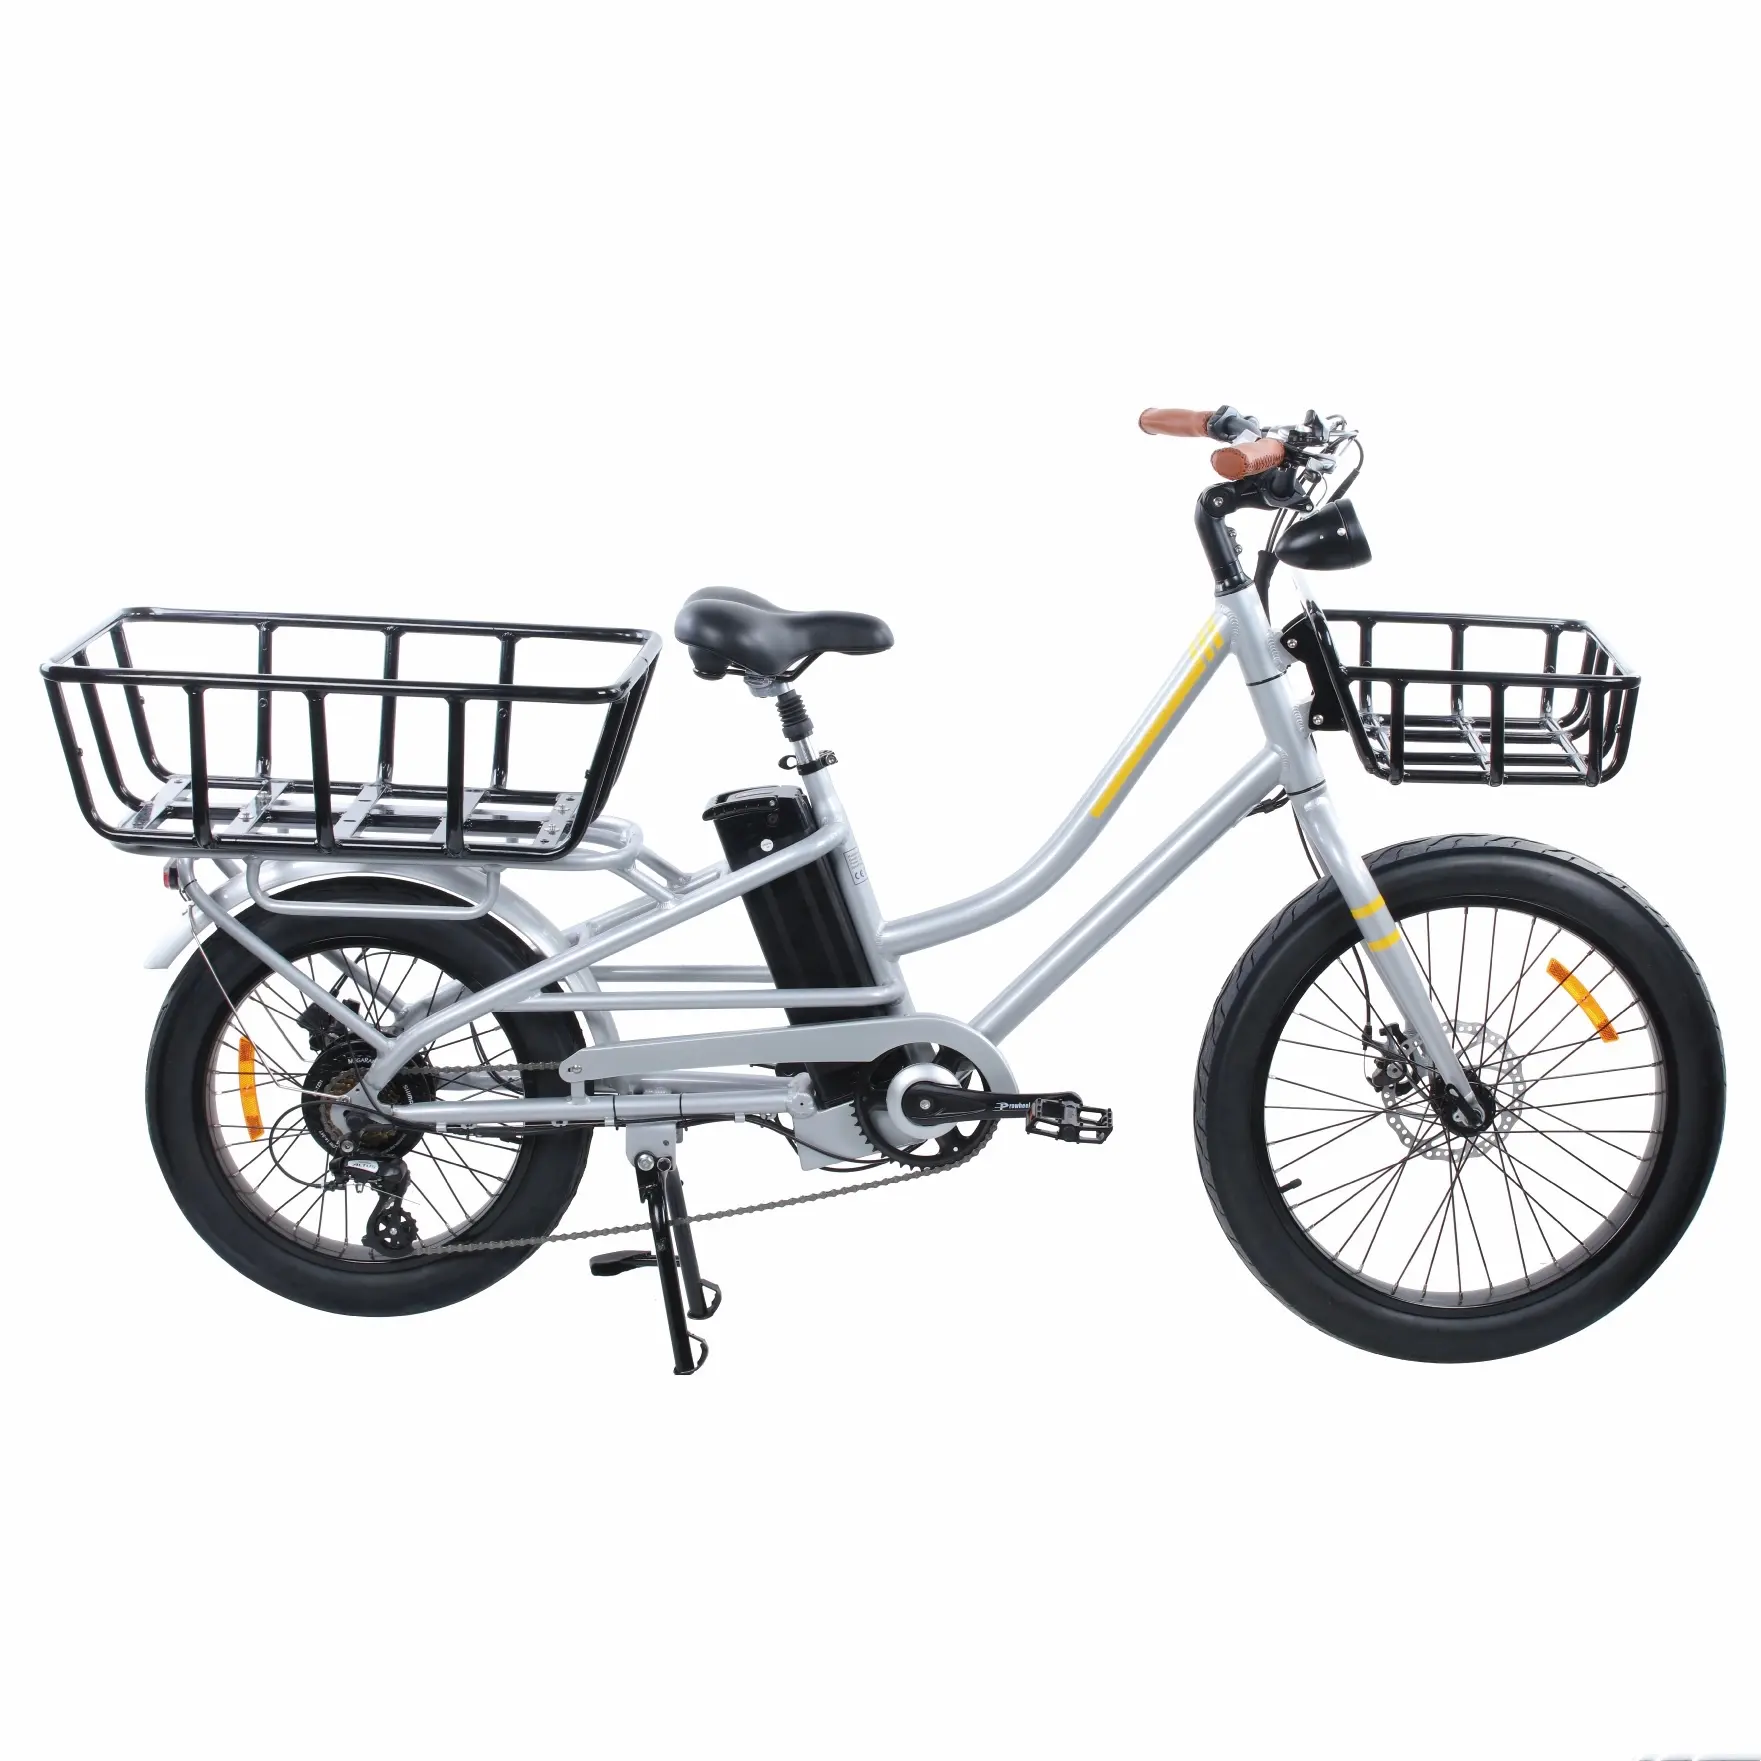 Fonte de fábrica de fábrica de passeio fácil potente entrega de carga ebike ultra carga ebike gorda pneu bicicleta elétrica cesta de bicicleta removível